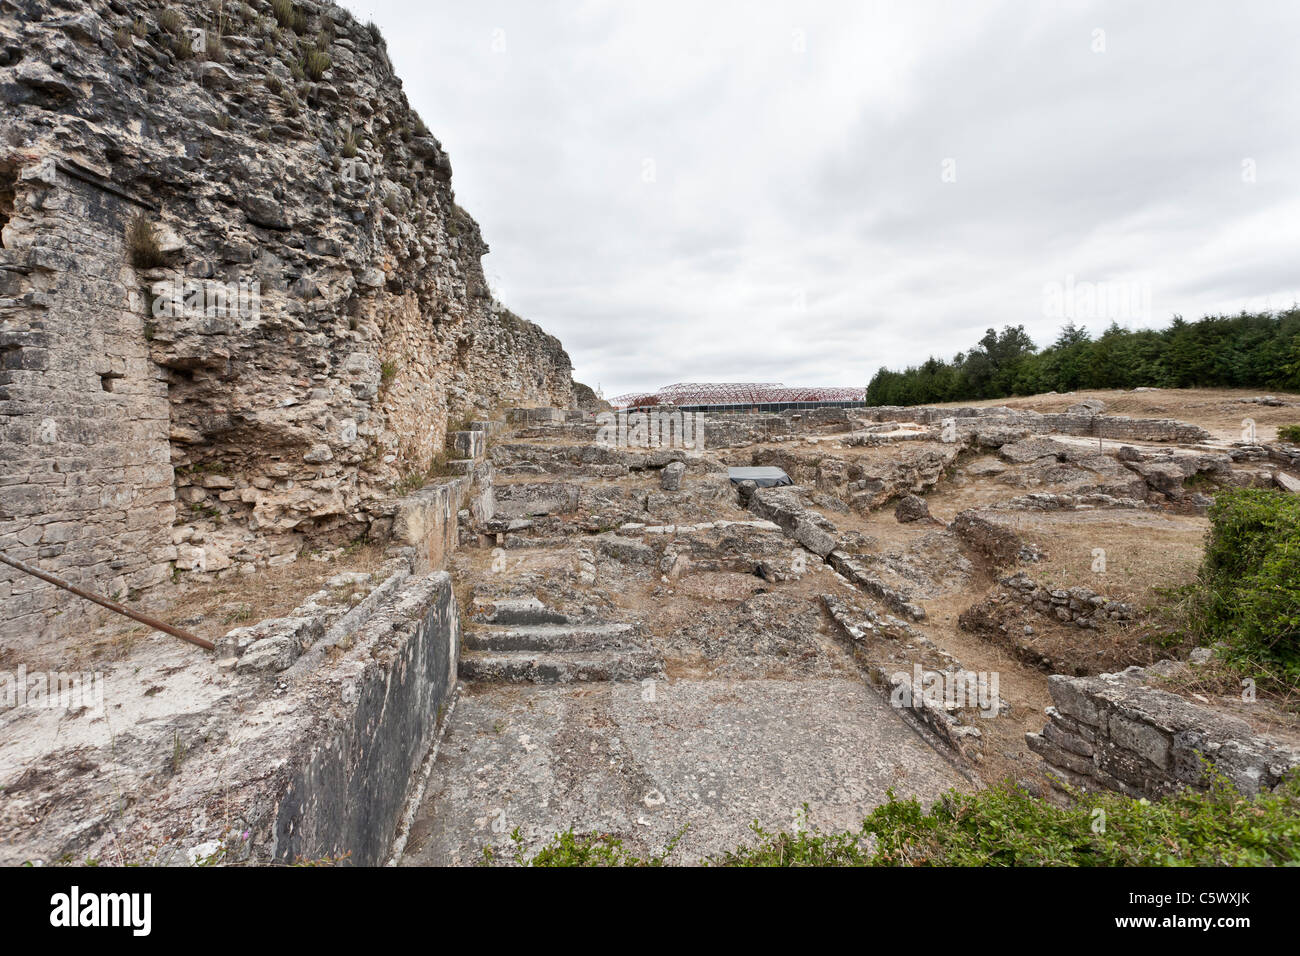 Natatio des bains du mur (Thermae) à Conimbriga, le mieux conservé des ruines de la ville romaine au Portugal. Banque D'Images